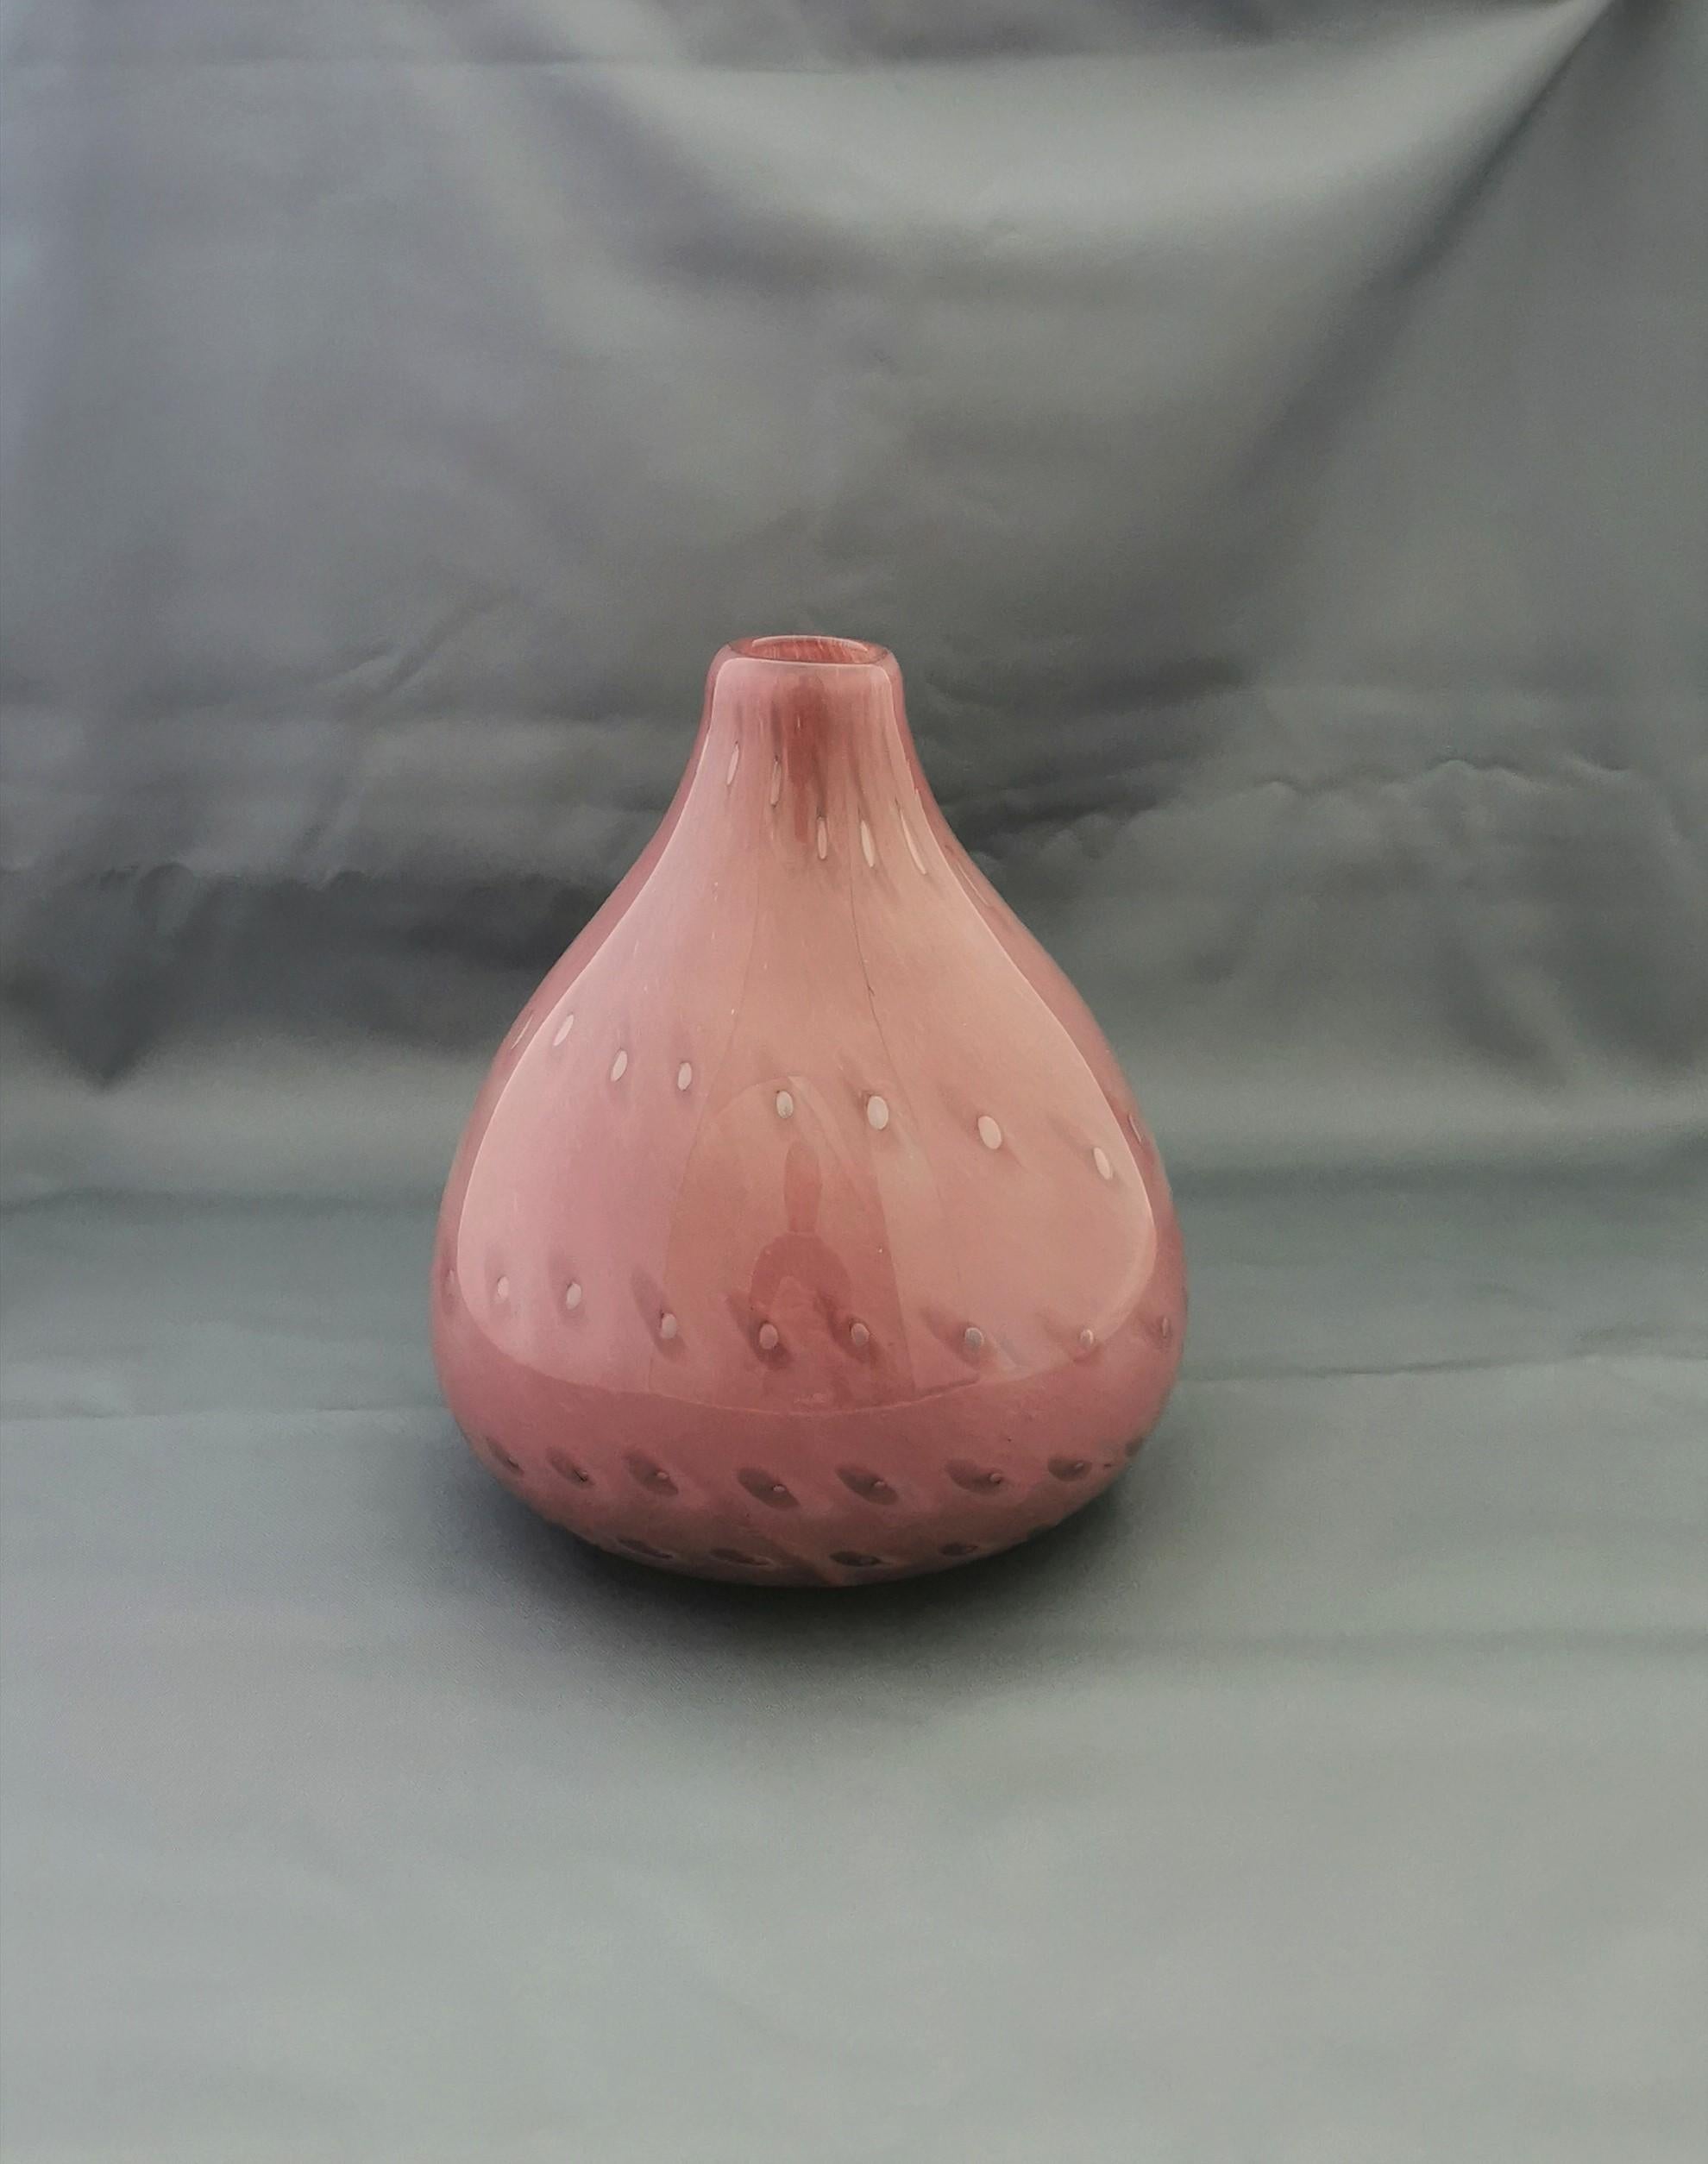 Vase produit en Italie dans les années 70. Le vase a été fabriqué en verre rose de Murano avec un corps 